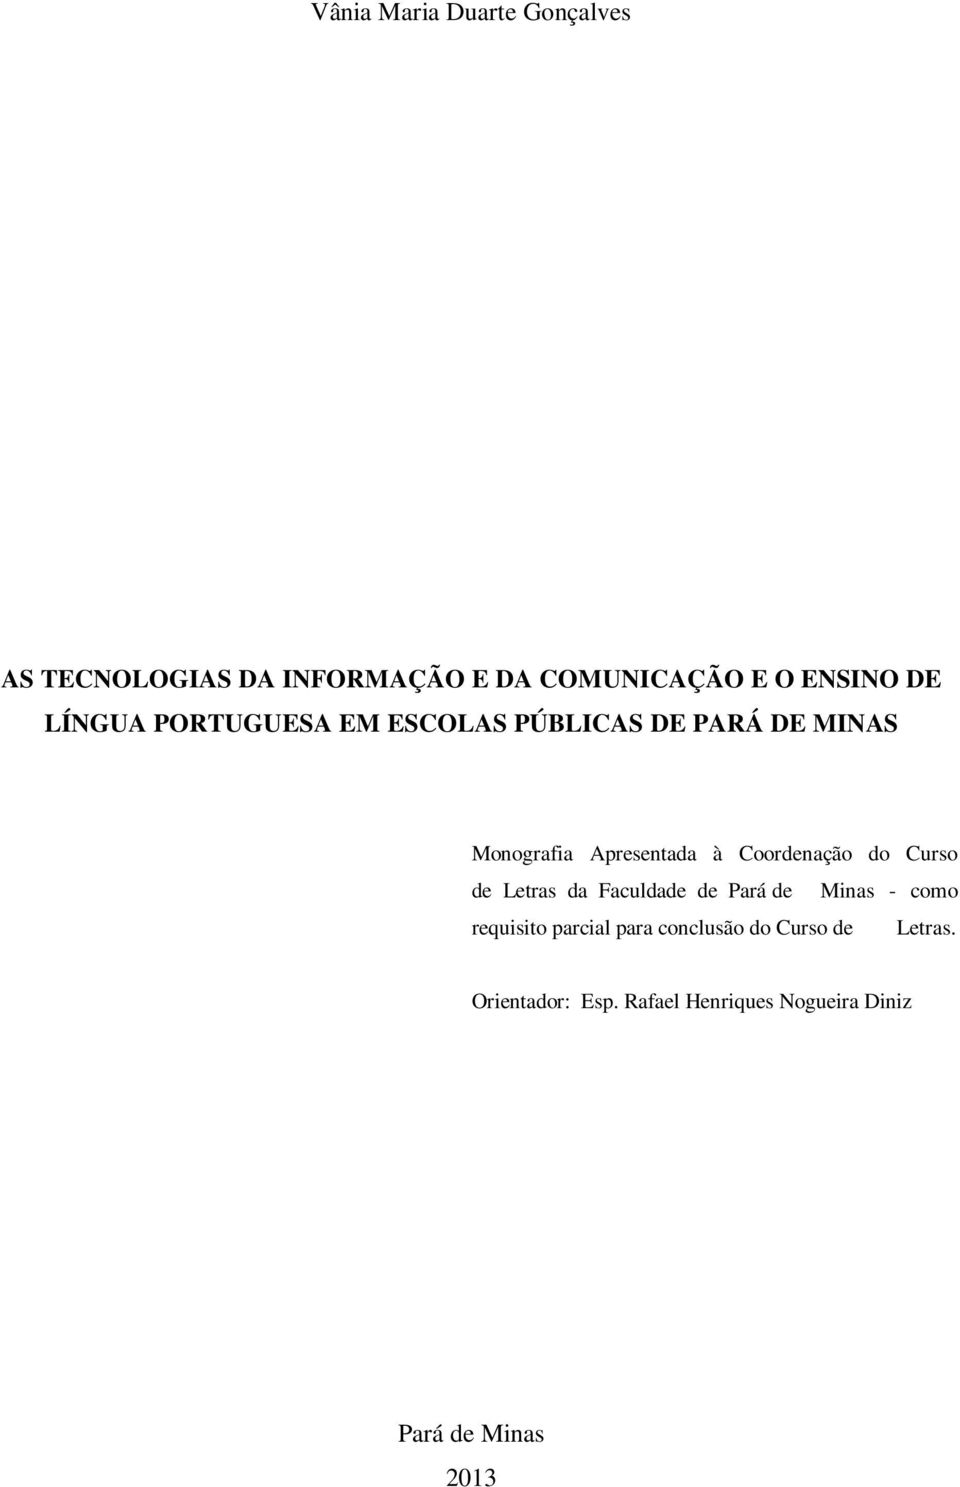 Coordenação do Curso de Letras da Faculdade de Pará de Minas - como requisito parcial